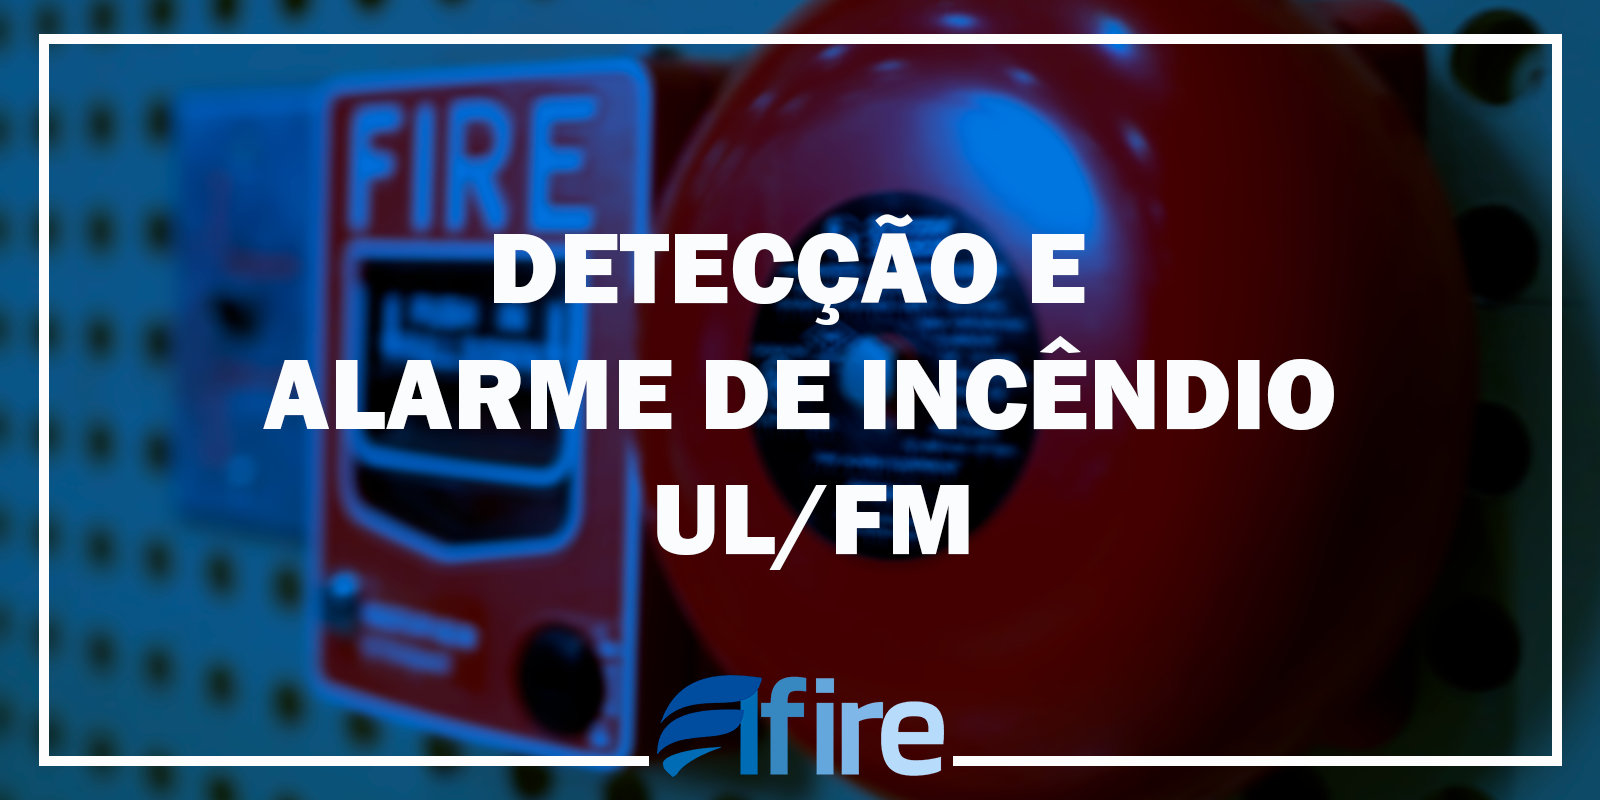 Detecção e alarme de incendio UL/FM